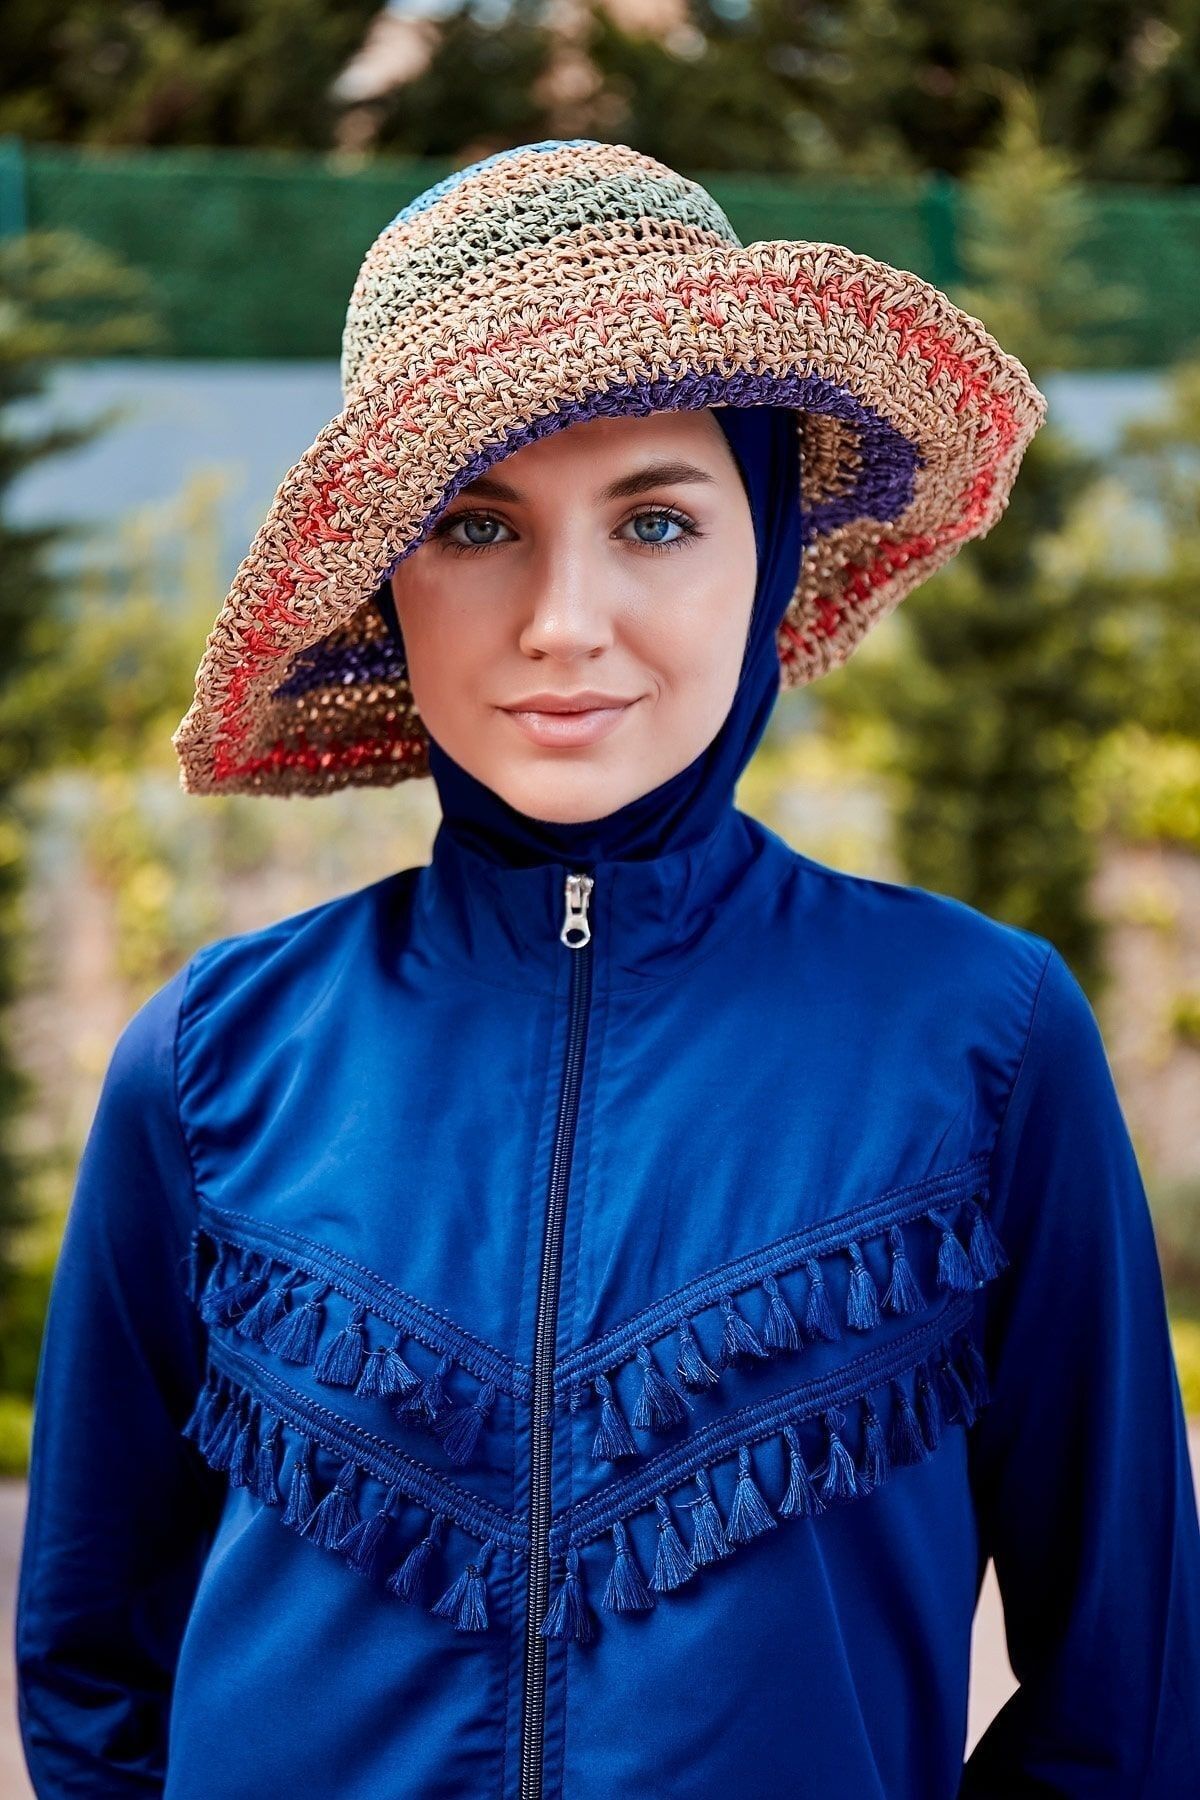 Marina Vizon Rengi Örgülü Hasır Şapka 11507